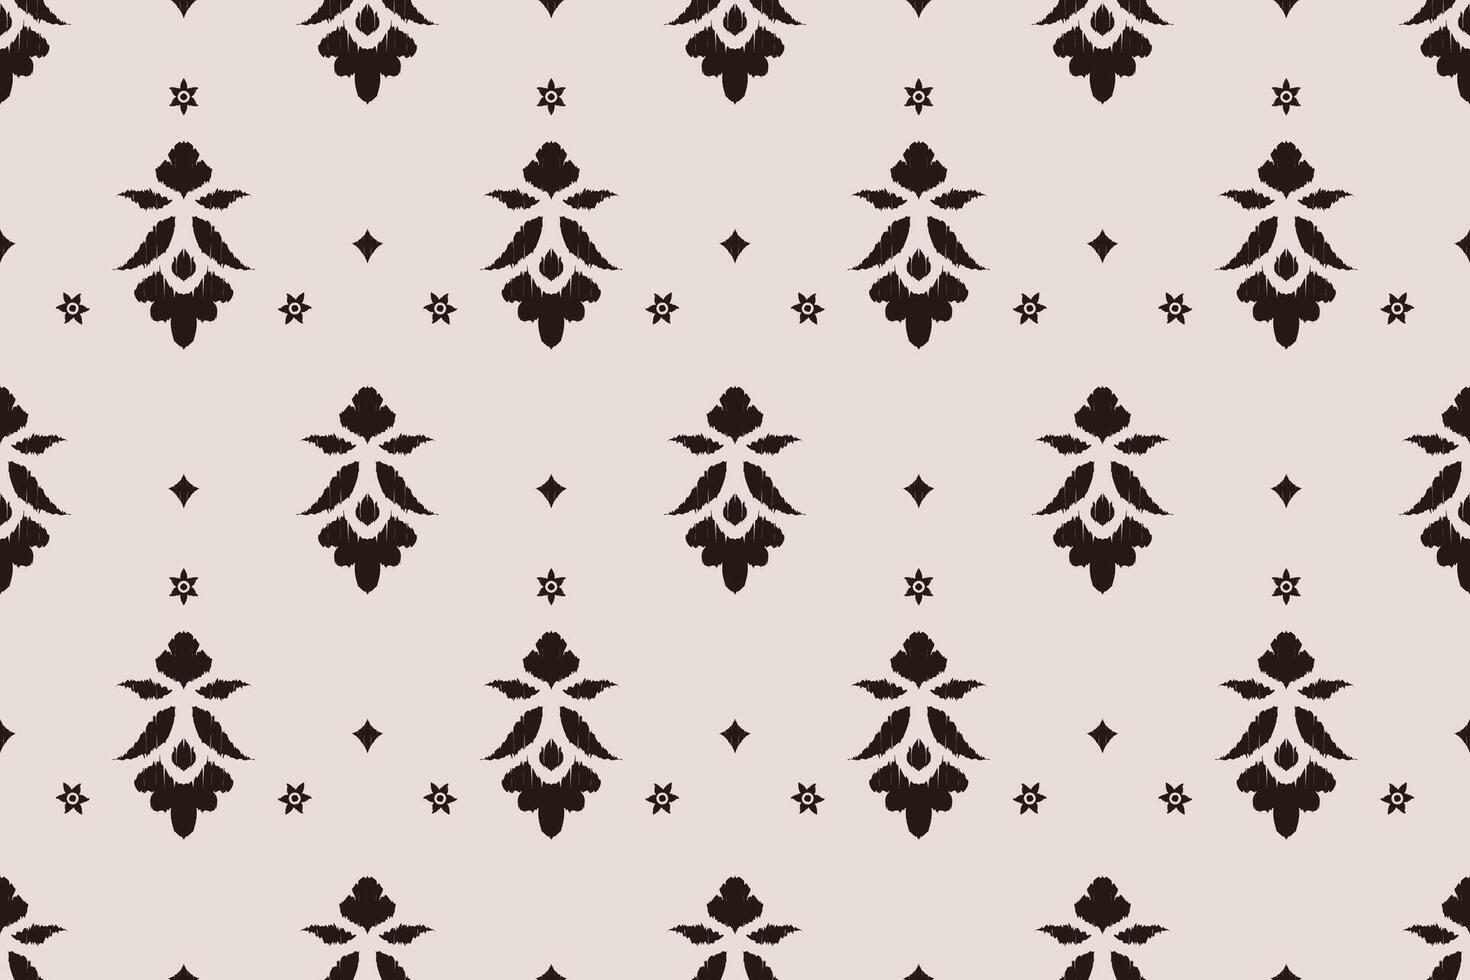 ikat tribal Indisch naadloos patroon. etnisch aztec kleding stof tapijt mandala ornament inheems boho chevron textiel.geometrisch Afrikaanse Amerikaans oosters traditioneel vector illustraties. borduurwerk stijl.